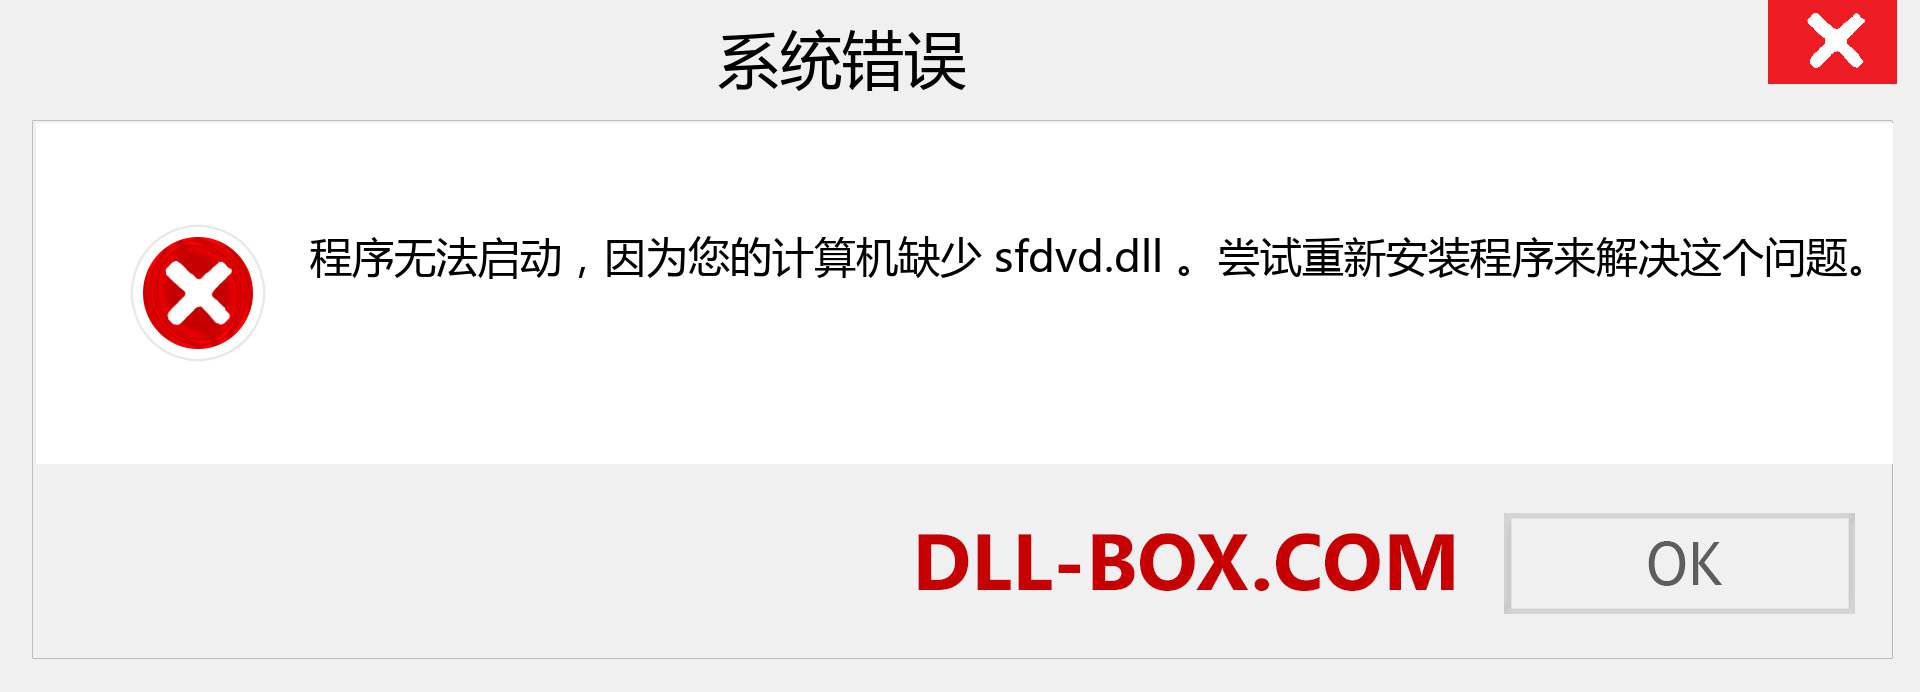 sfdvd.dll 文件丢失？。 适用于 Windows 7、8、10 的下载 - 修复 Windows、照片、图像上的 sfdvd dll 丢失错误